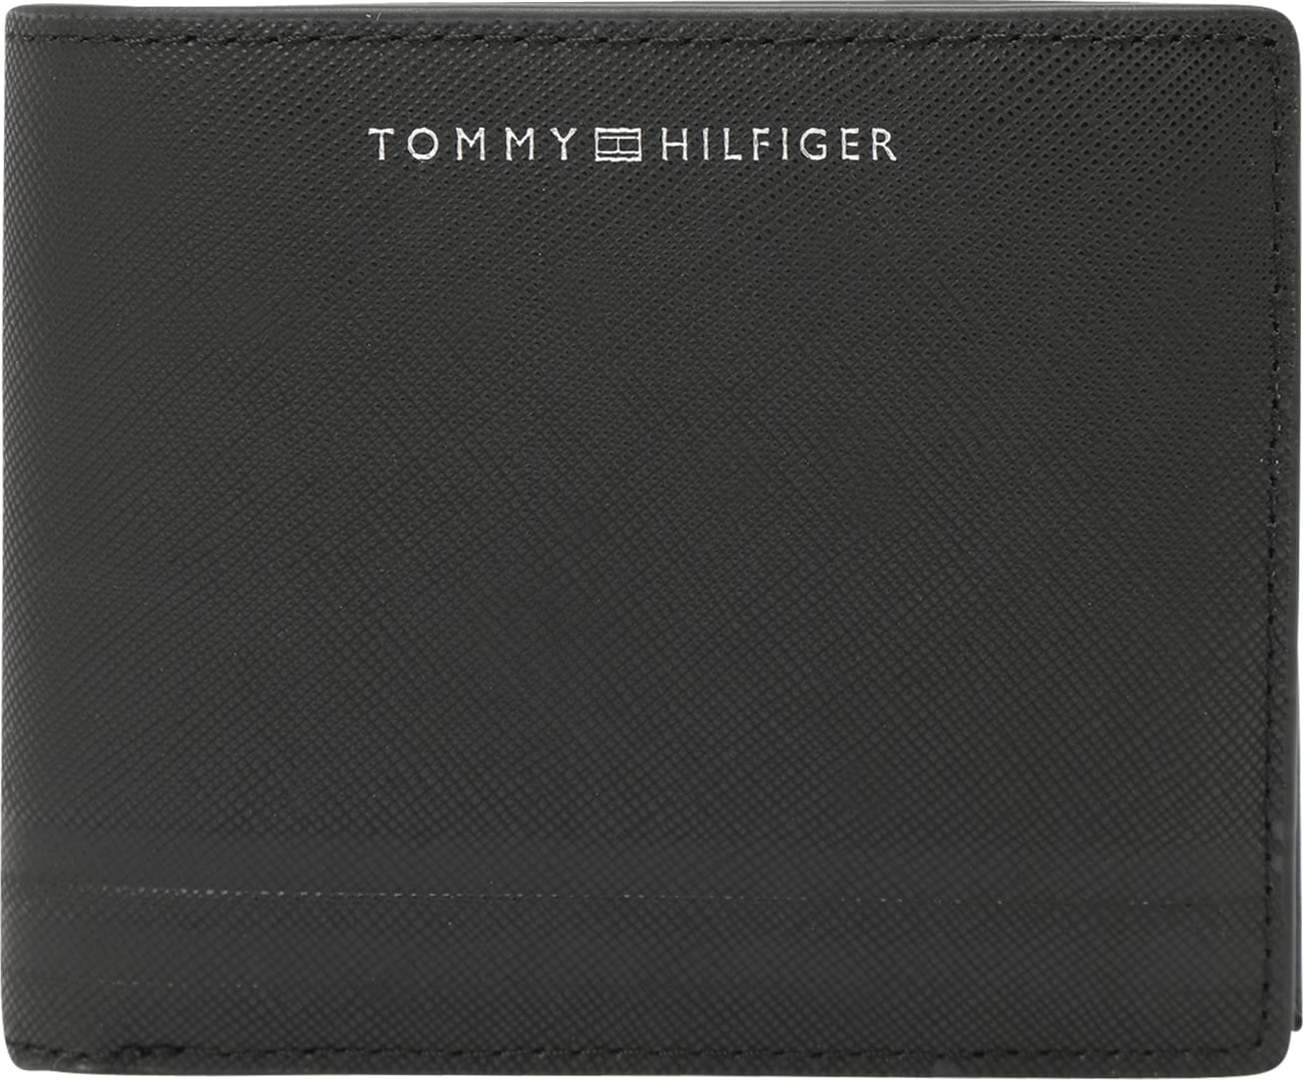 TOMMY HILFIGER Peněženka černá / bílá